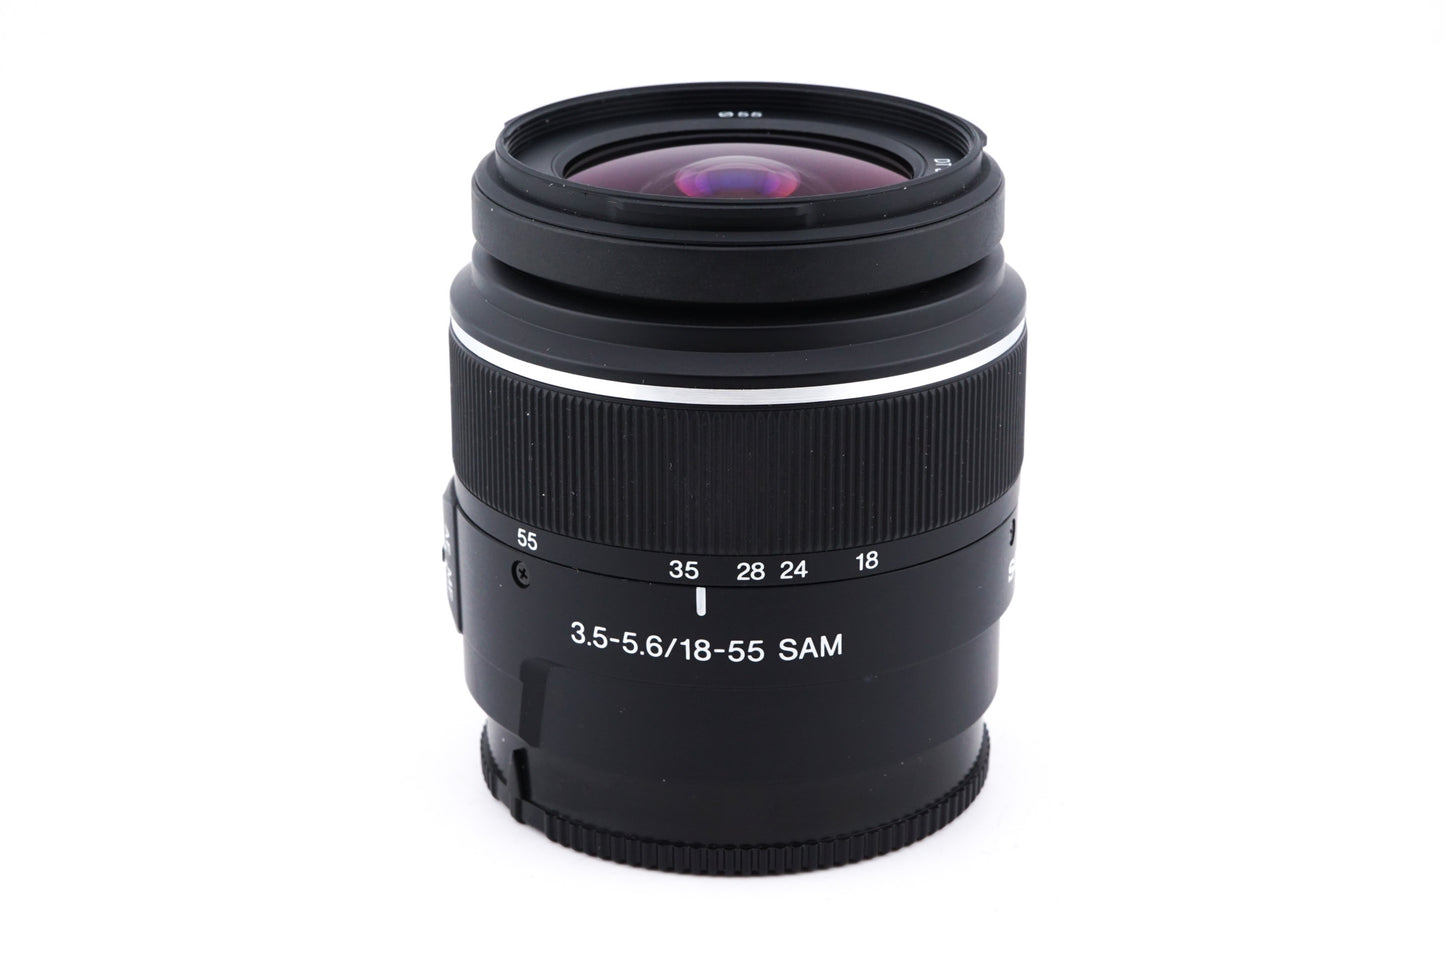 Sony 18-55mm f3.5-5.6 DT SAM - Lens